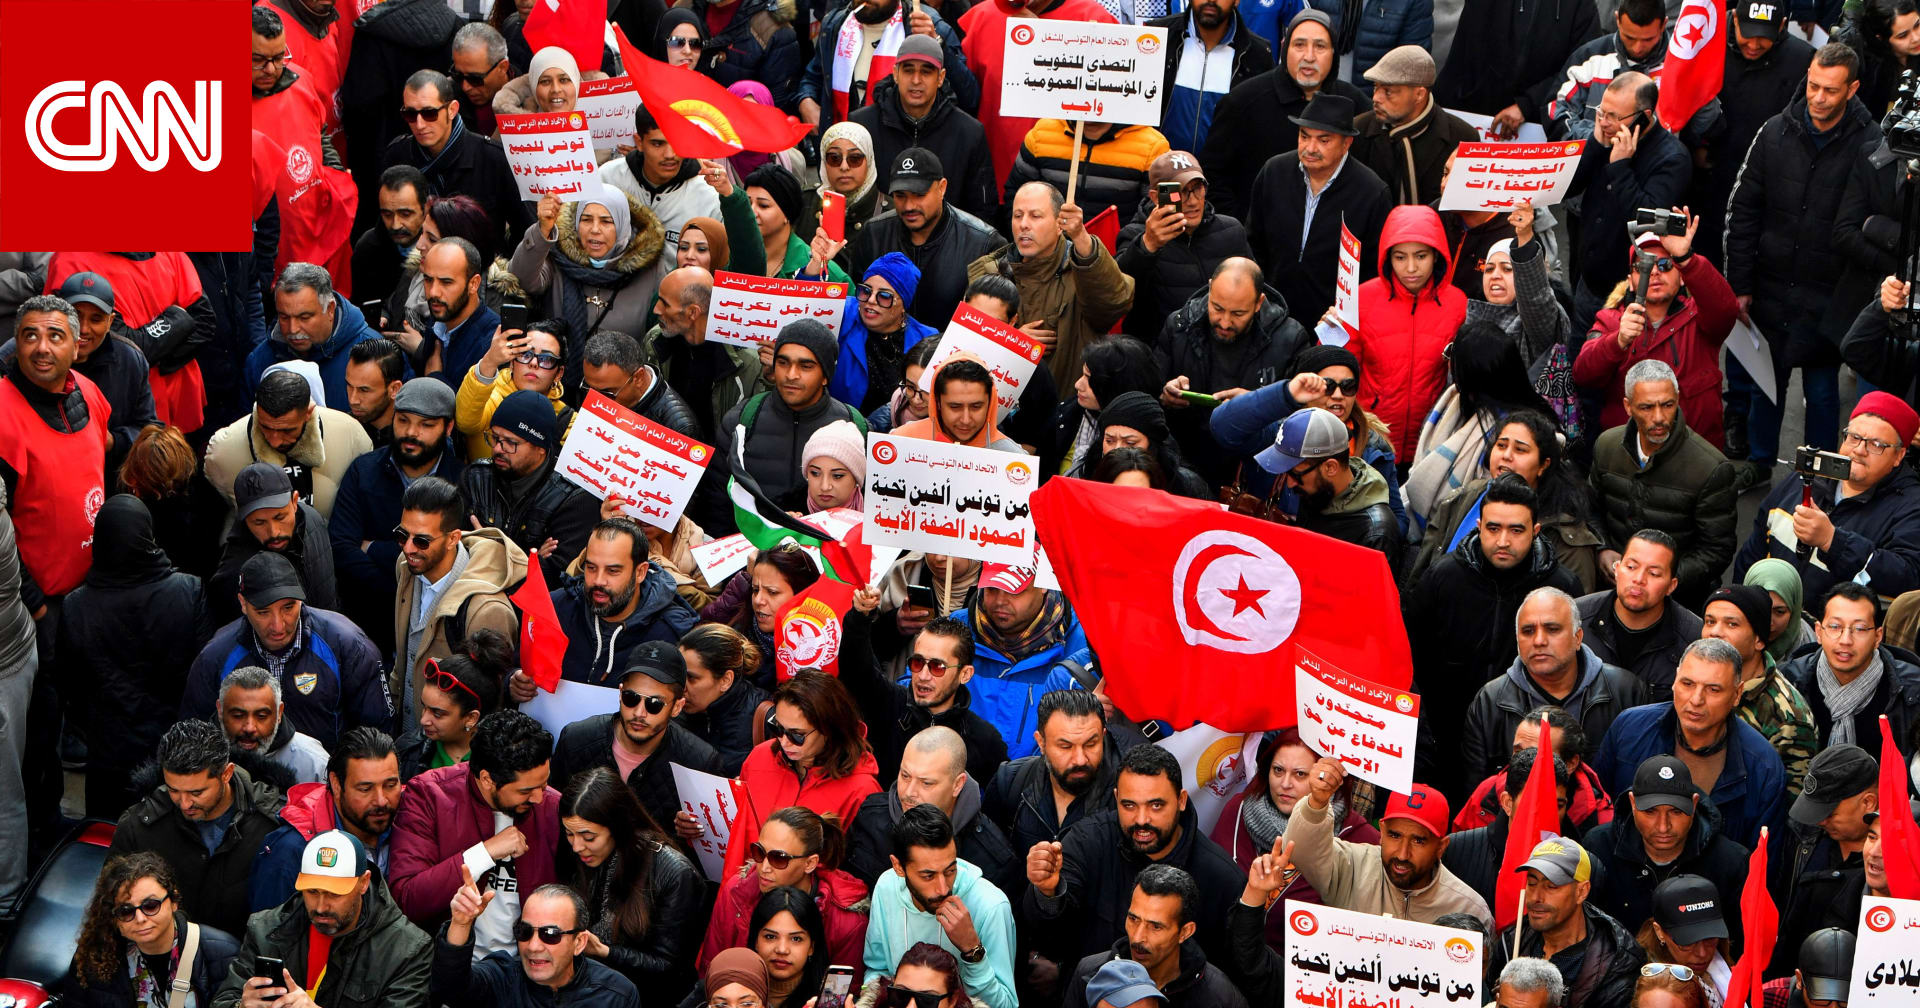 تونس.. الاتحاد العام للشغل يتظاهر ضد سياسات قيس سعيد